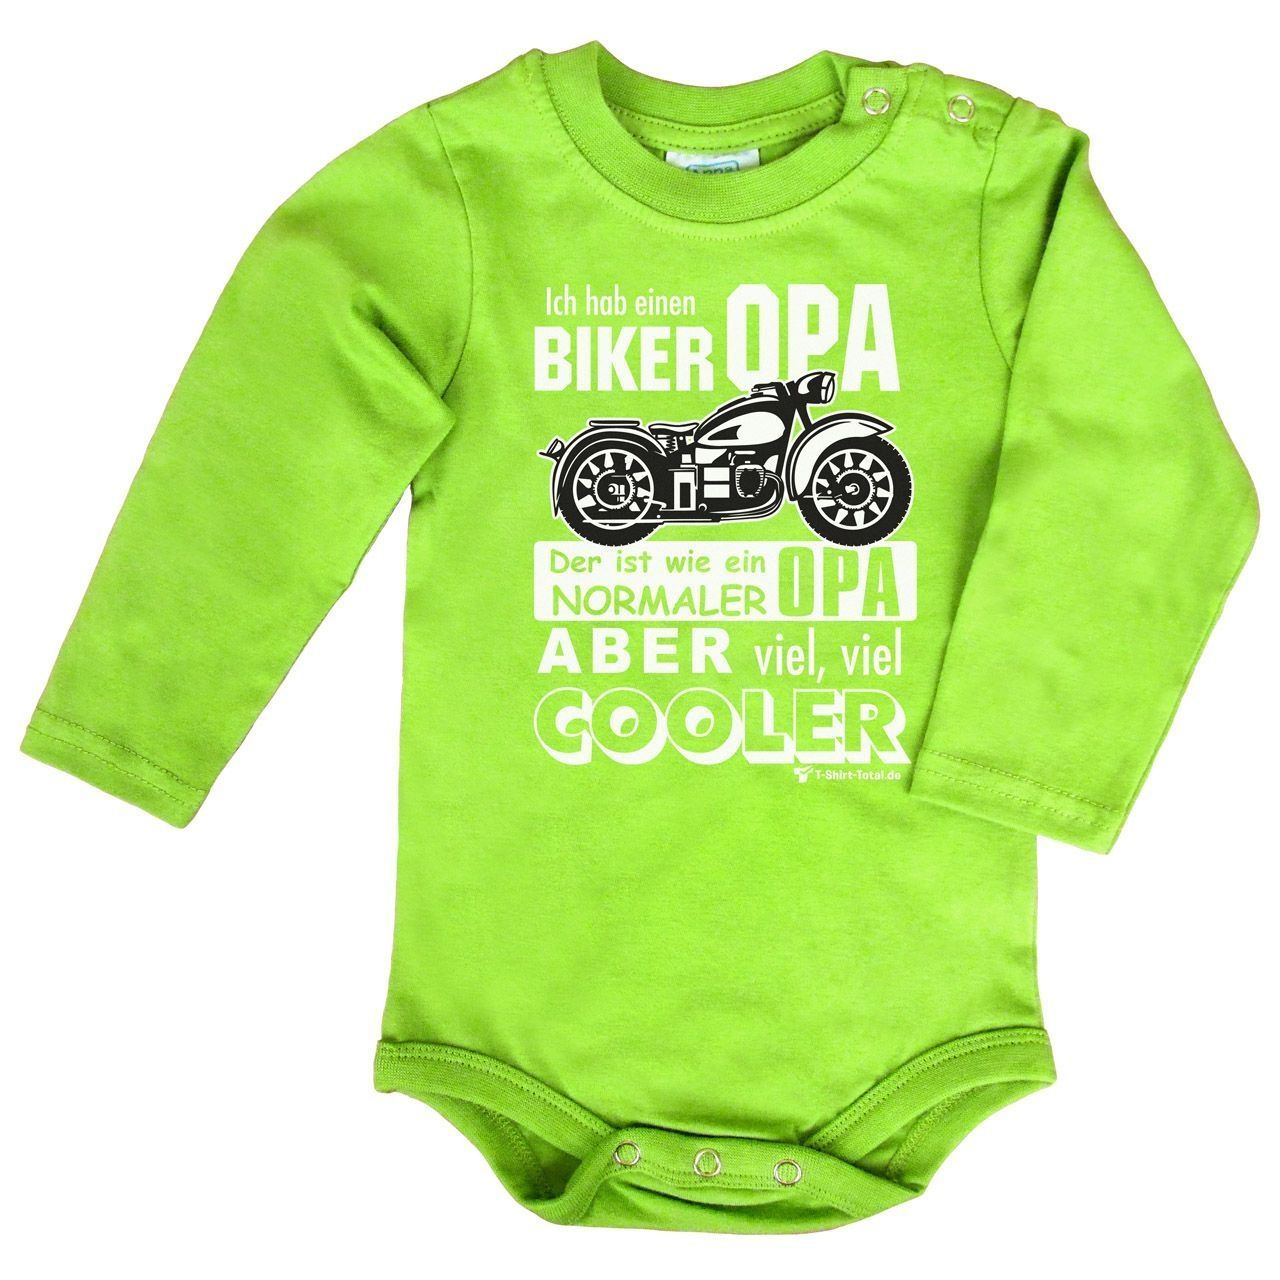 Biker Opa Baby Body Langarm hellgrün 80 / 86